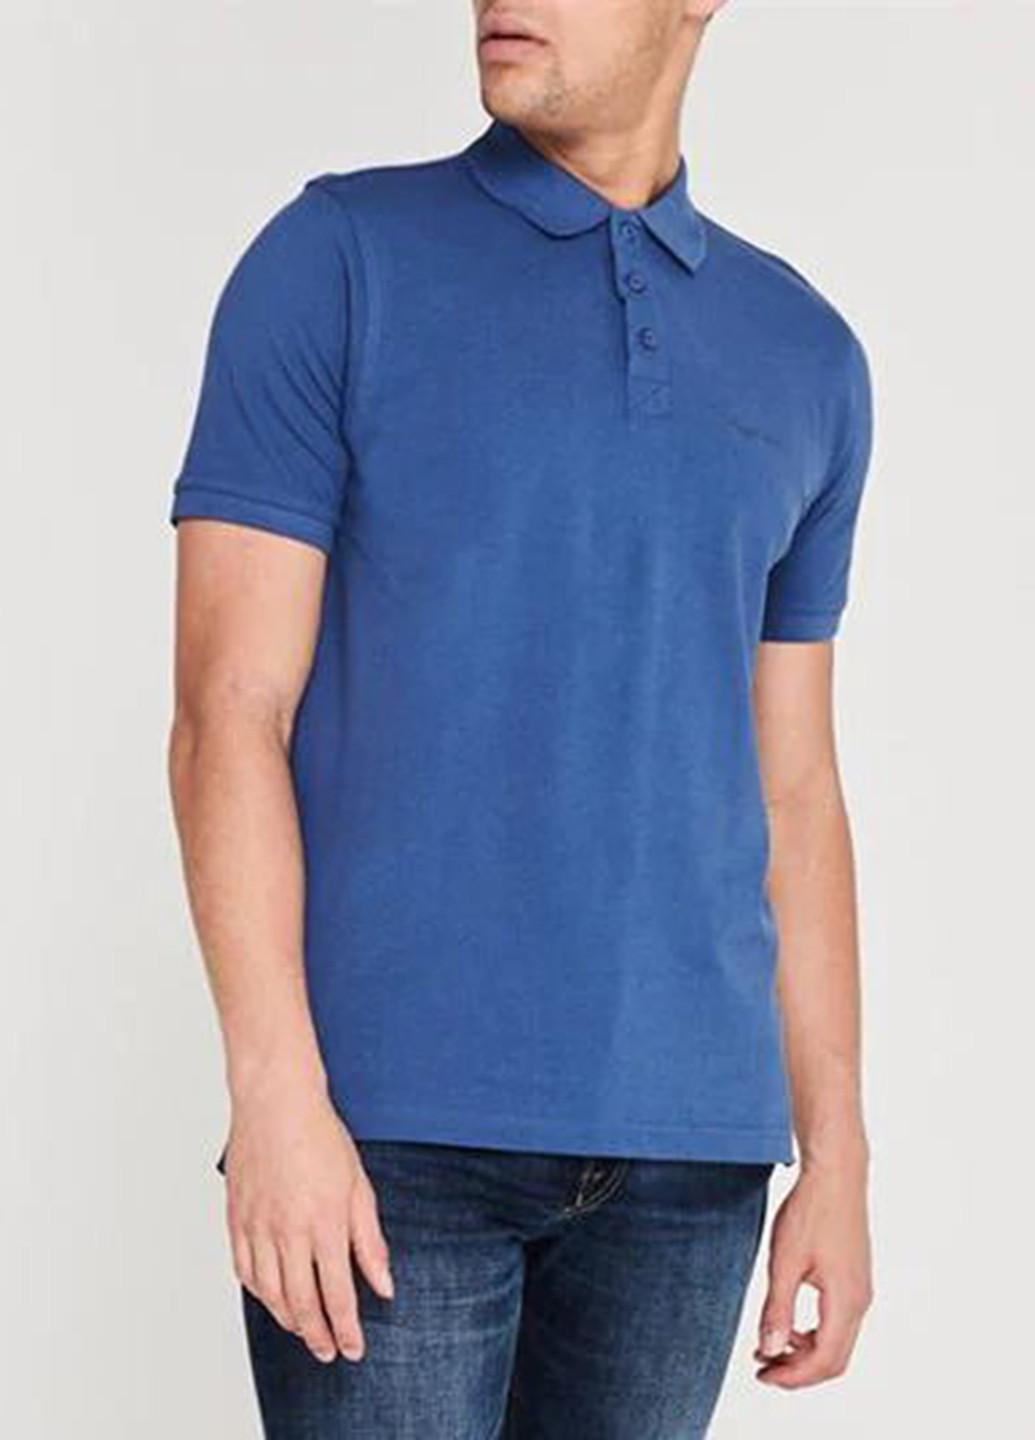 Синяя футболка-поло для мужчин Pierre Cardin однотонная